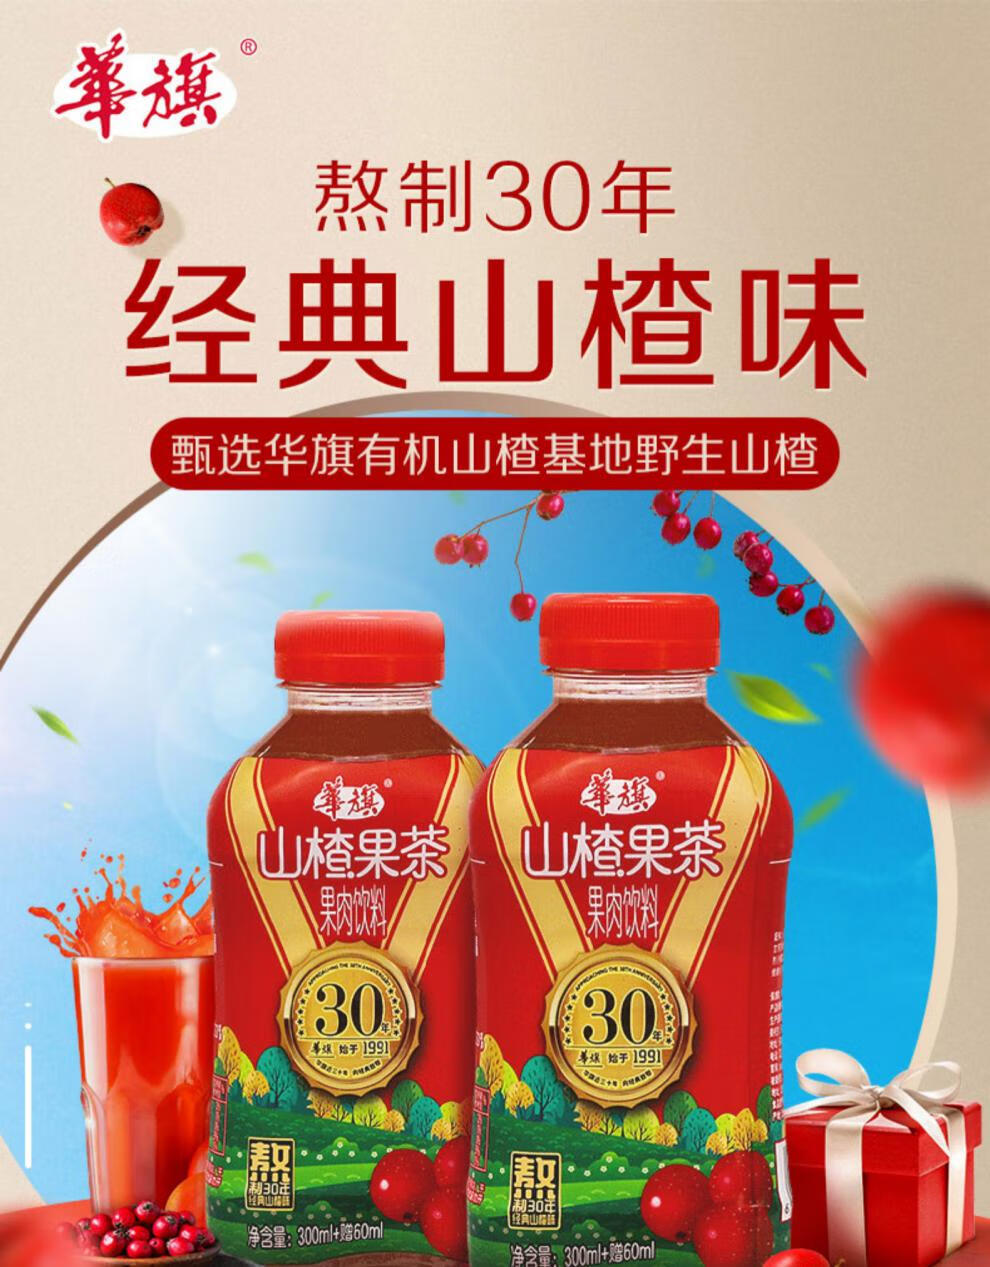 中国山楂饮料品牌大全图片